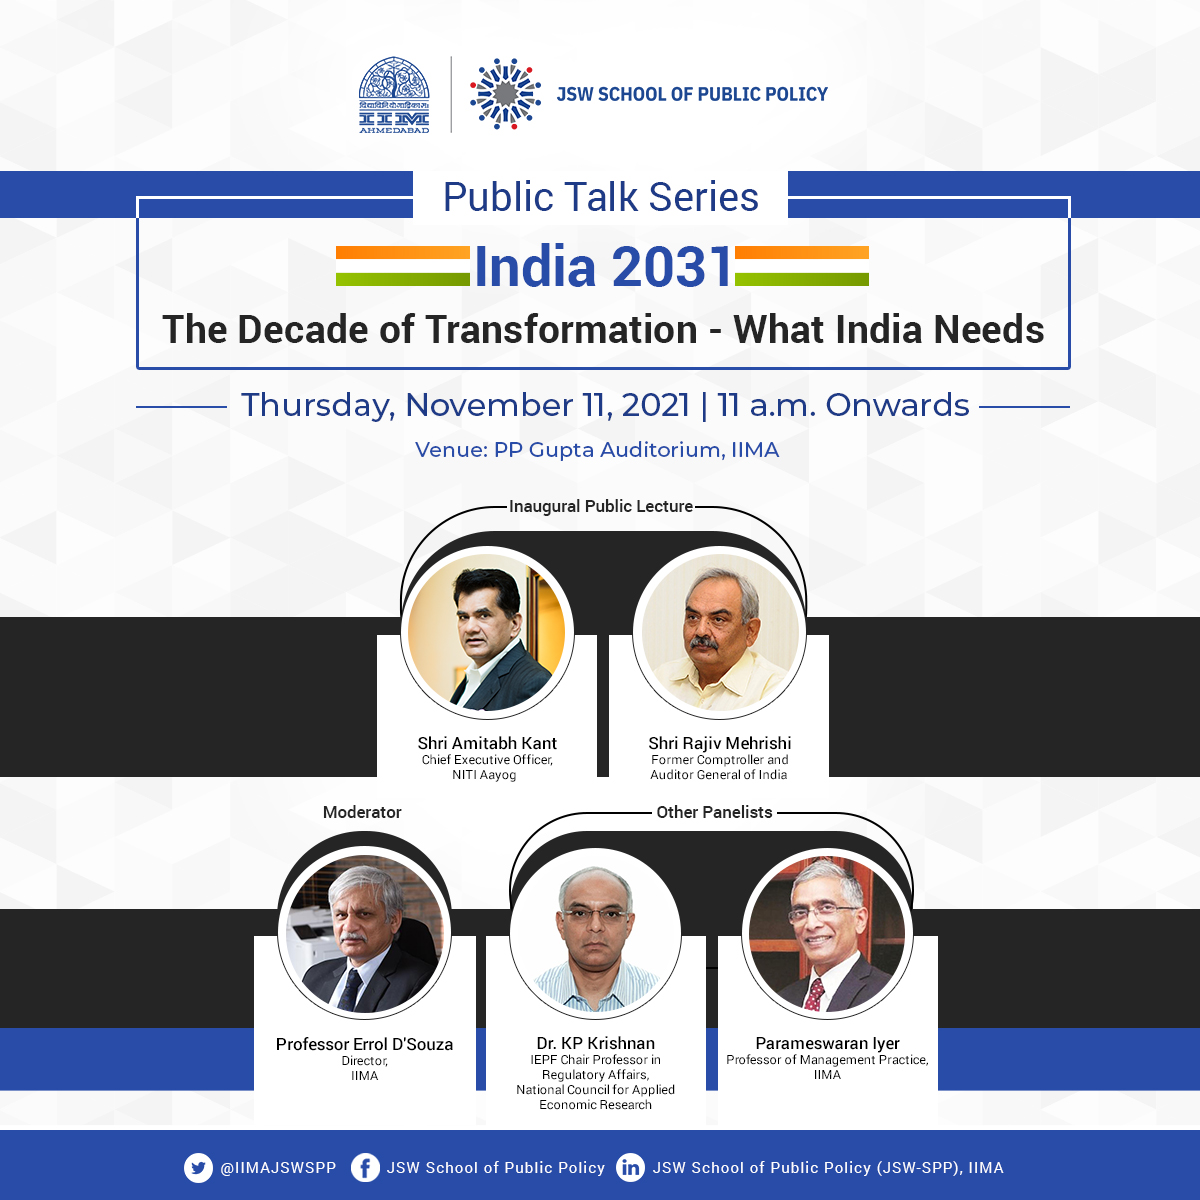 India 2021 Public Talk Series